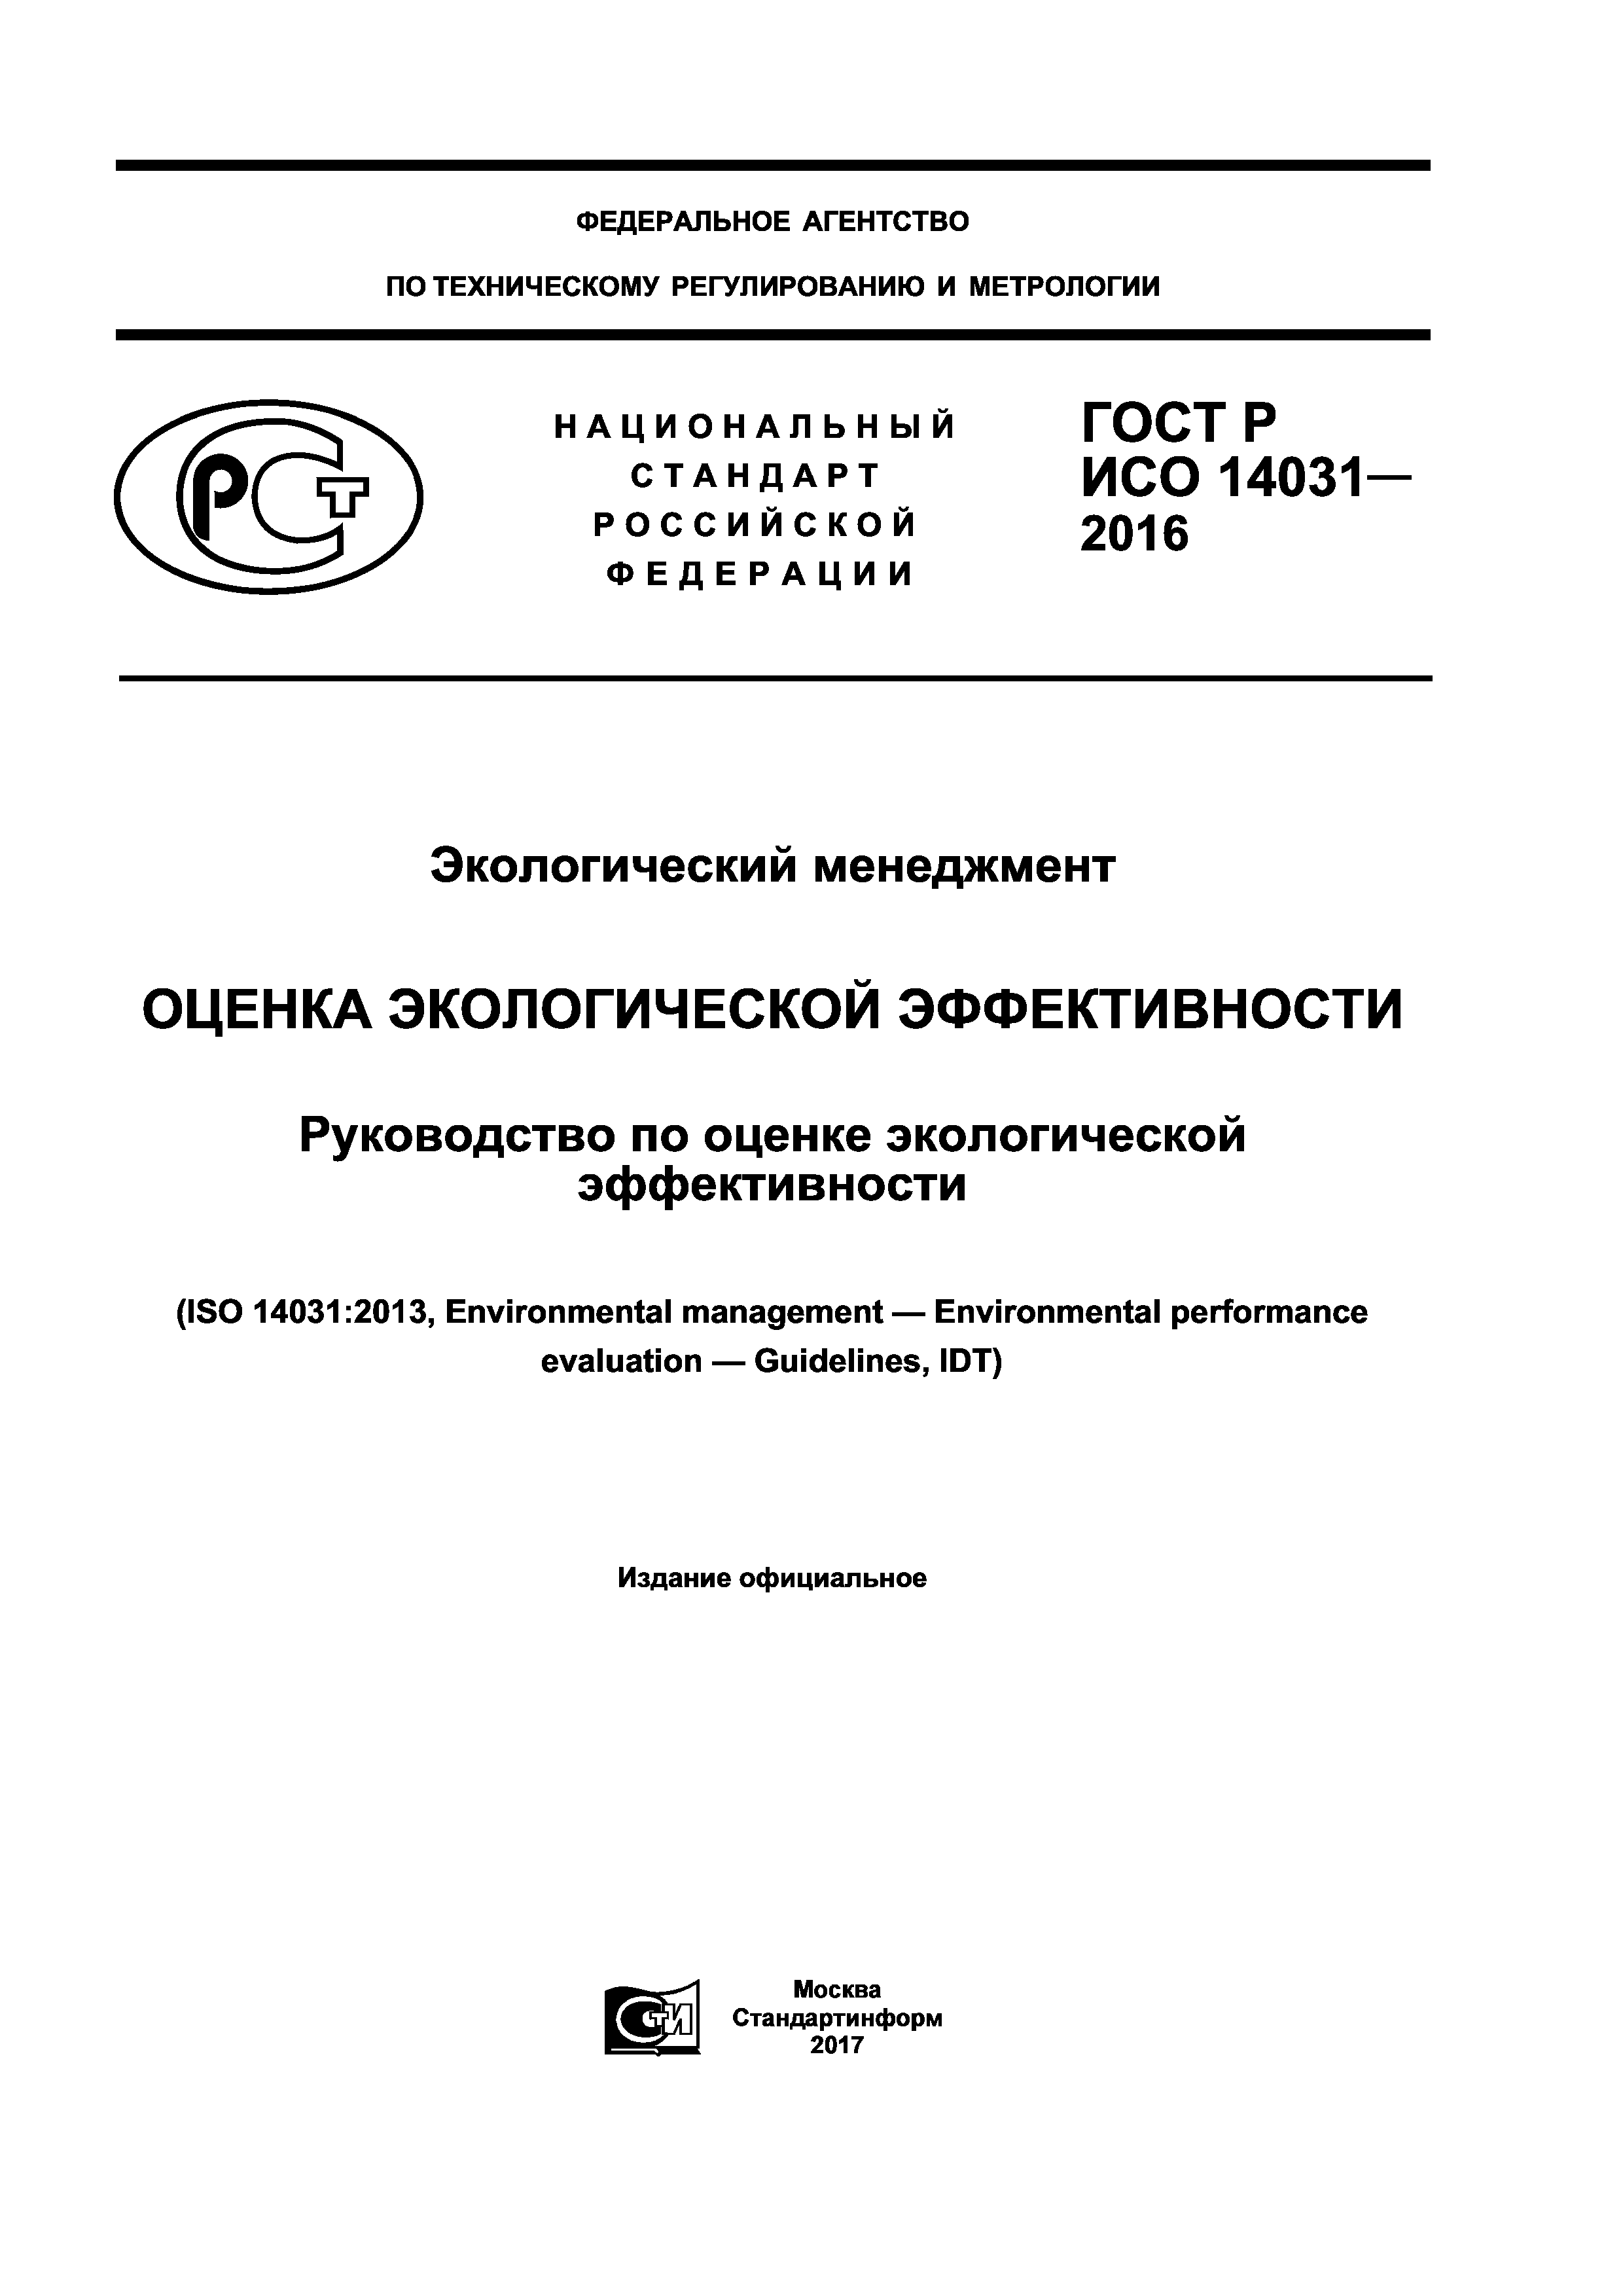 ГОСТ Р ИСО 14031-2016